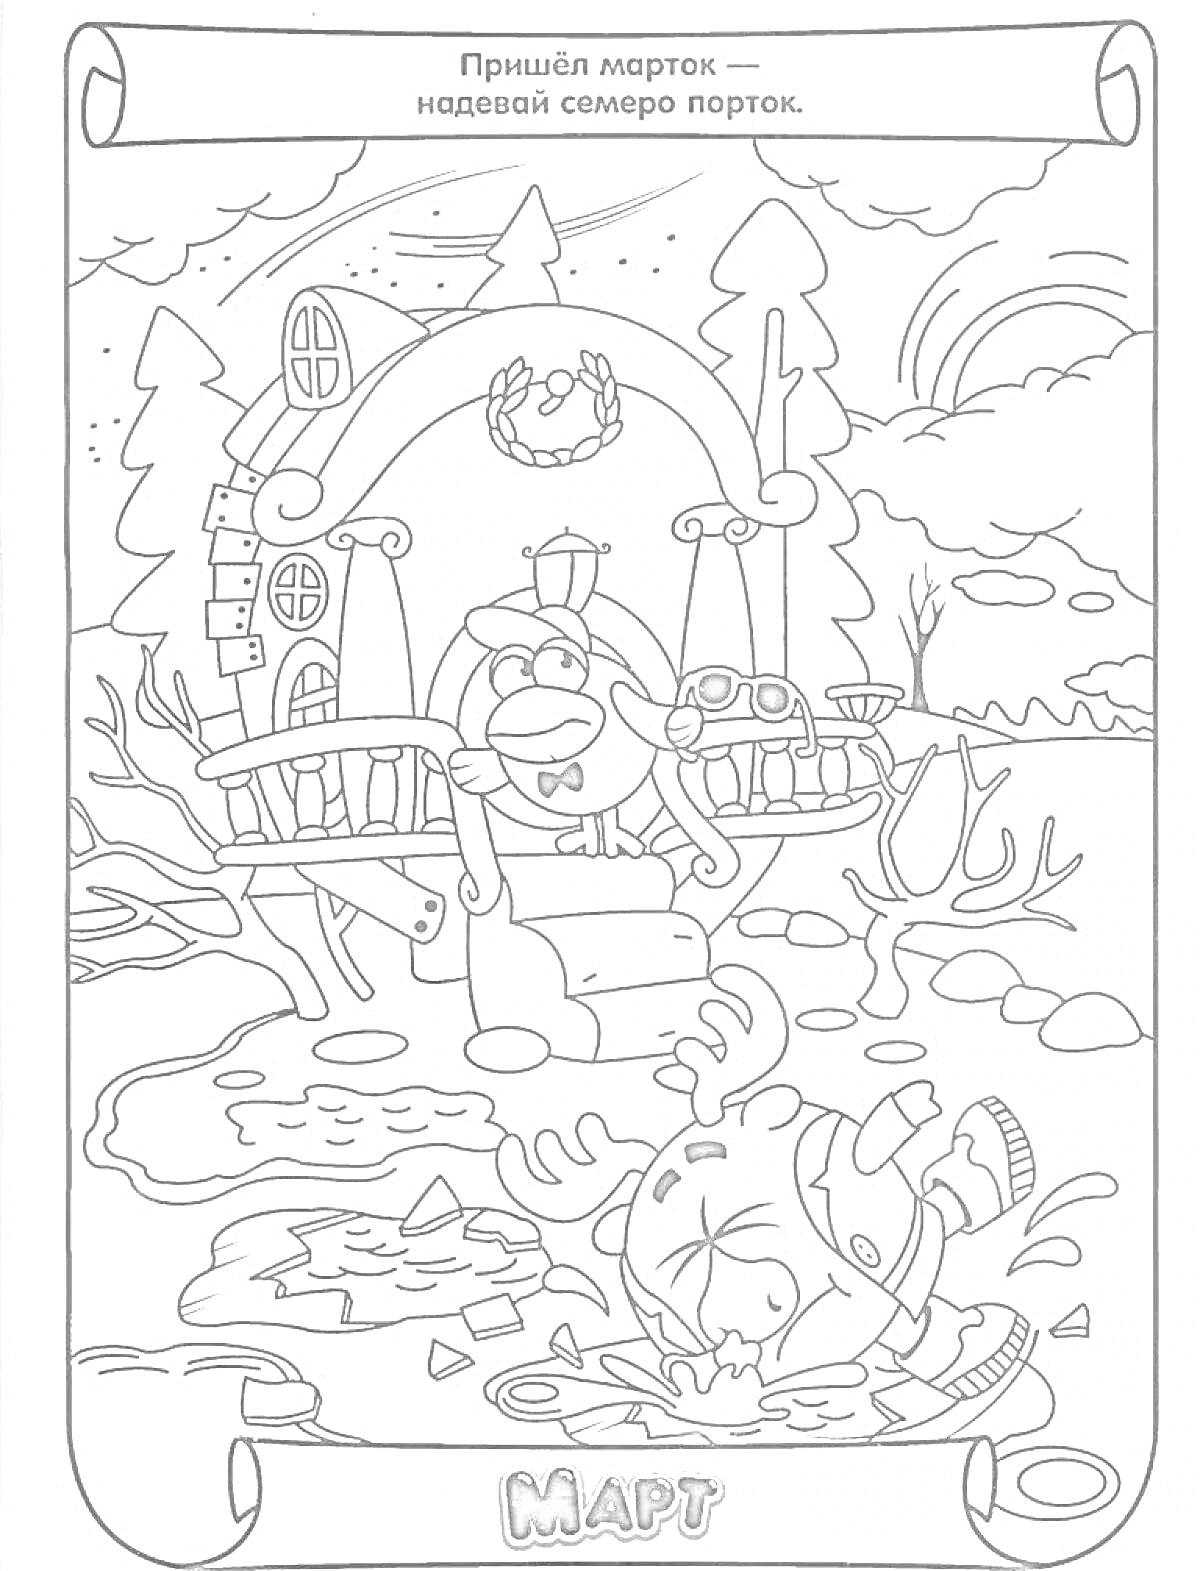 Раскраска Два персонажа на фоне домика. Один из персонажей сидит на лавочке, а другой - на дереве с куском льда в руках, окруженный весенним пейзажем.